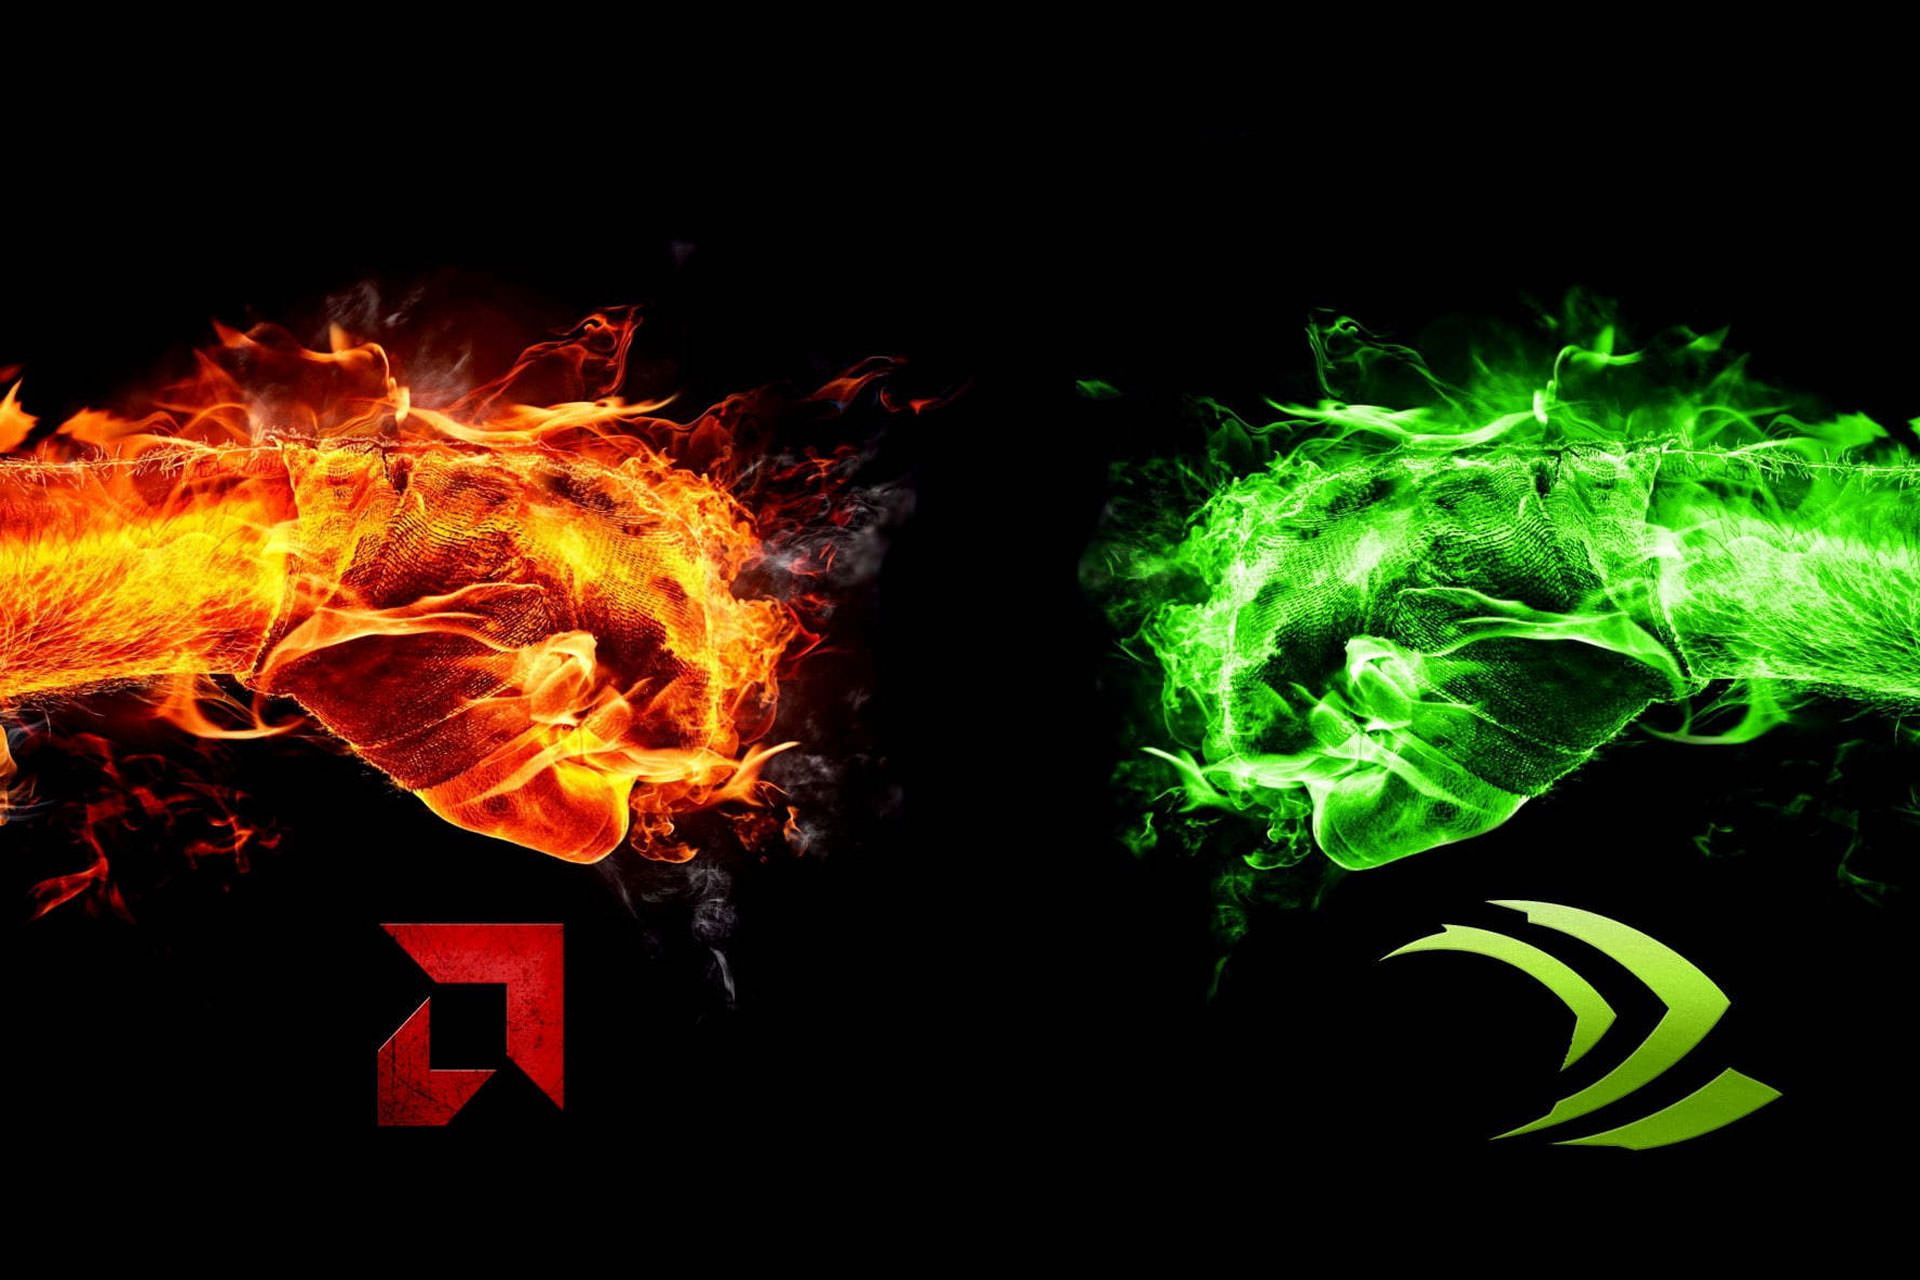 مشت سبز و مشت قرمز با لوگو انویدیا و AMD